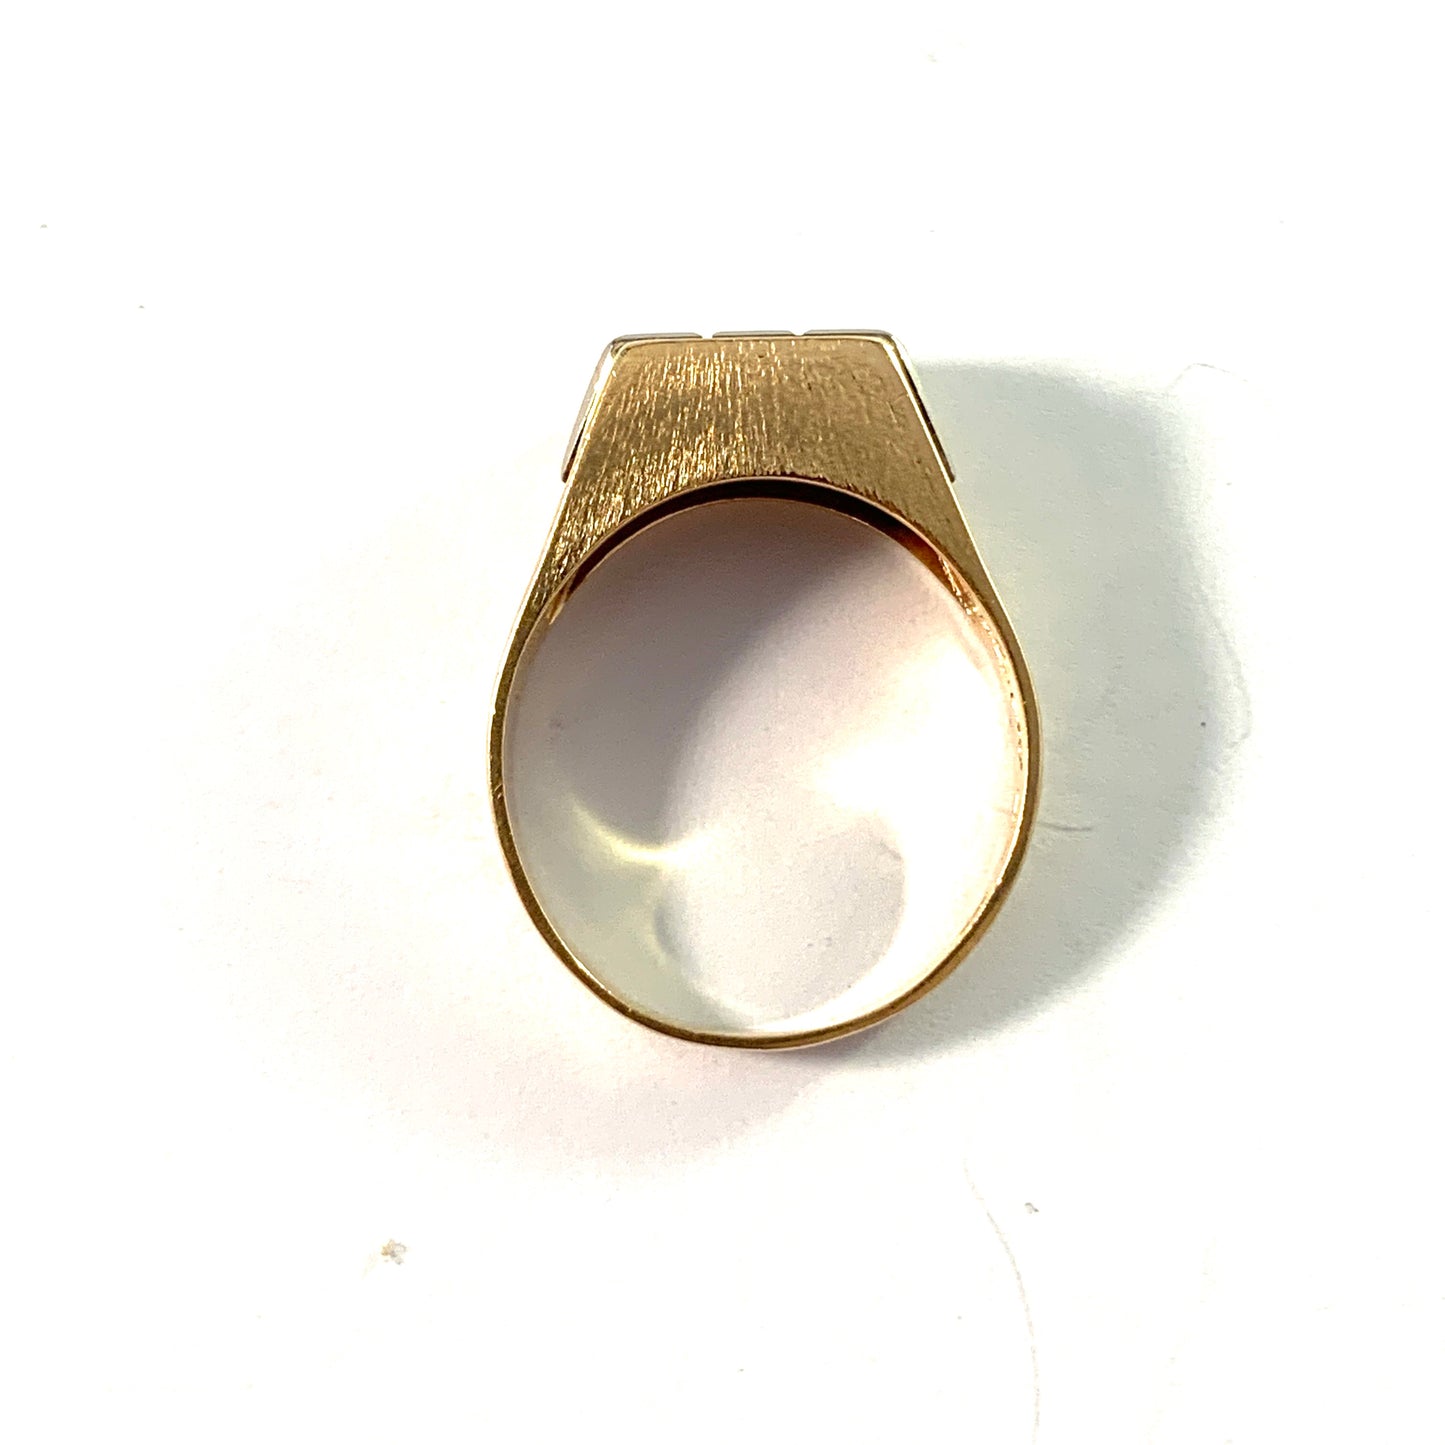 Atelje Stigbert, Sweden 1969. Vintage 18k Gold Diamond Ring.